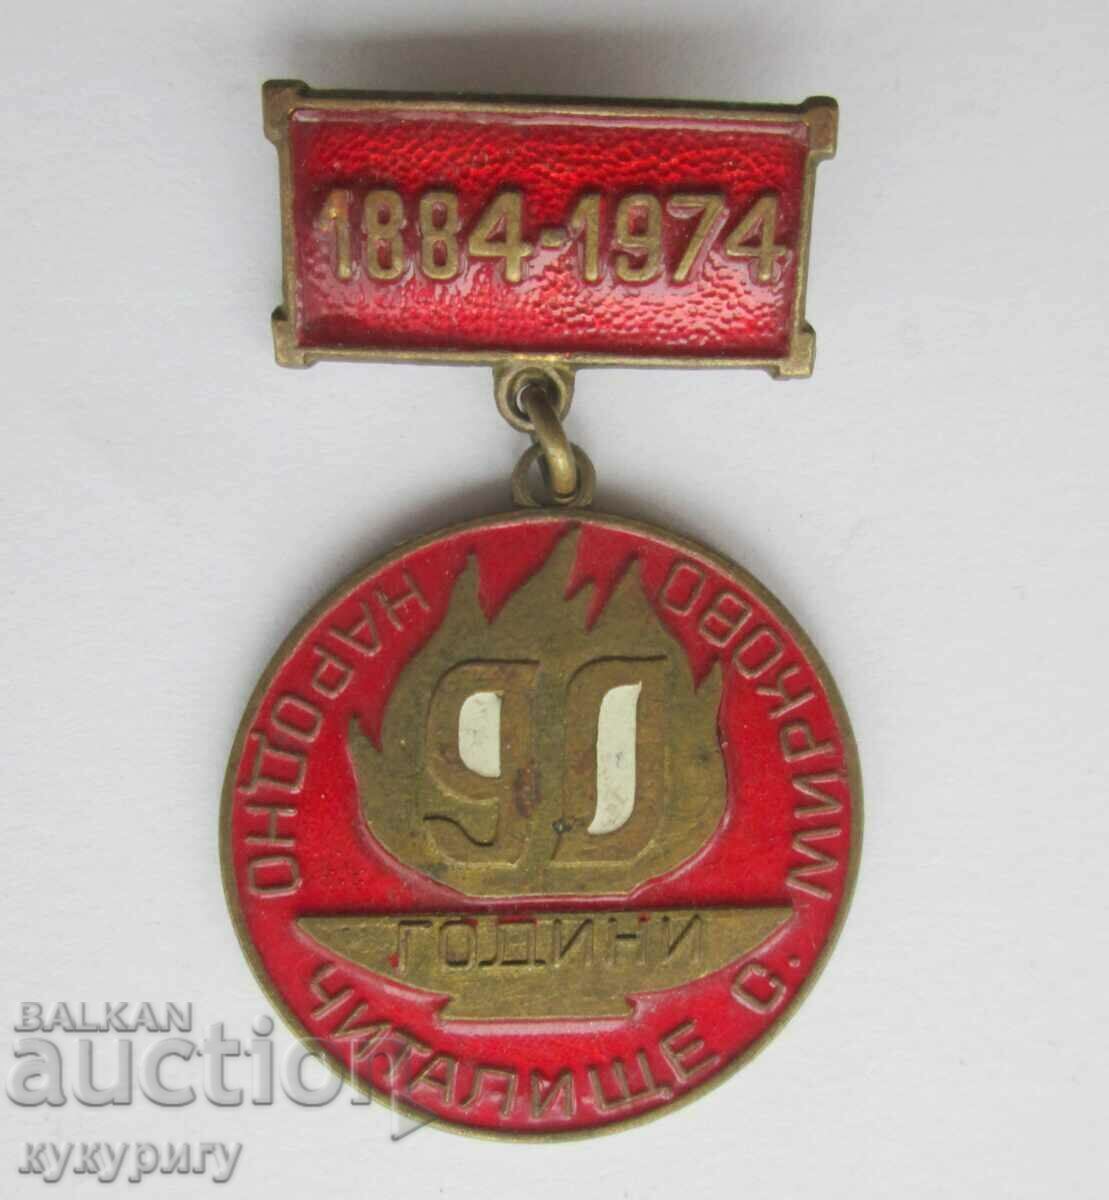 Σήμα παλαιού μεταλλίου Κέντρο Λαϊκής Κοινότητας Μίρκοβο 1884-1974